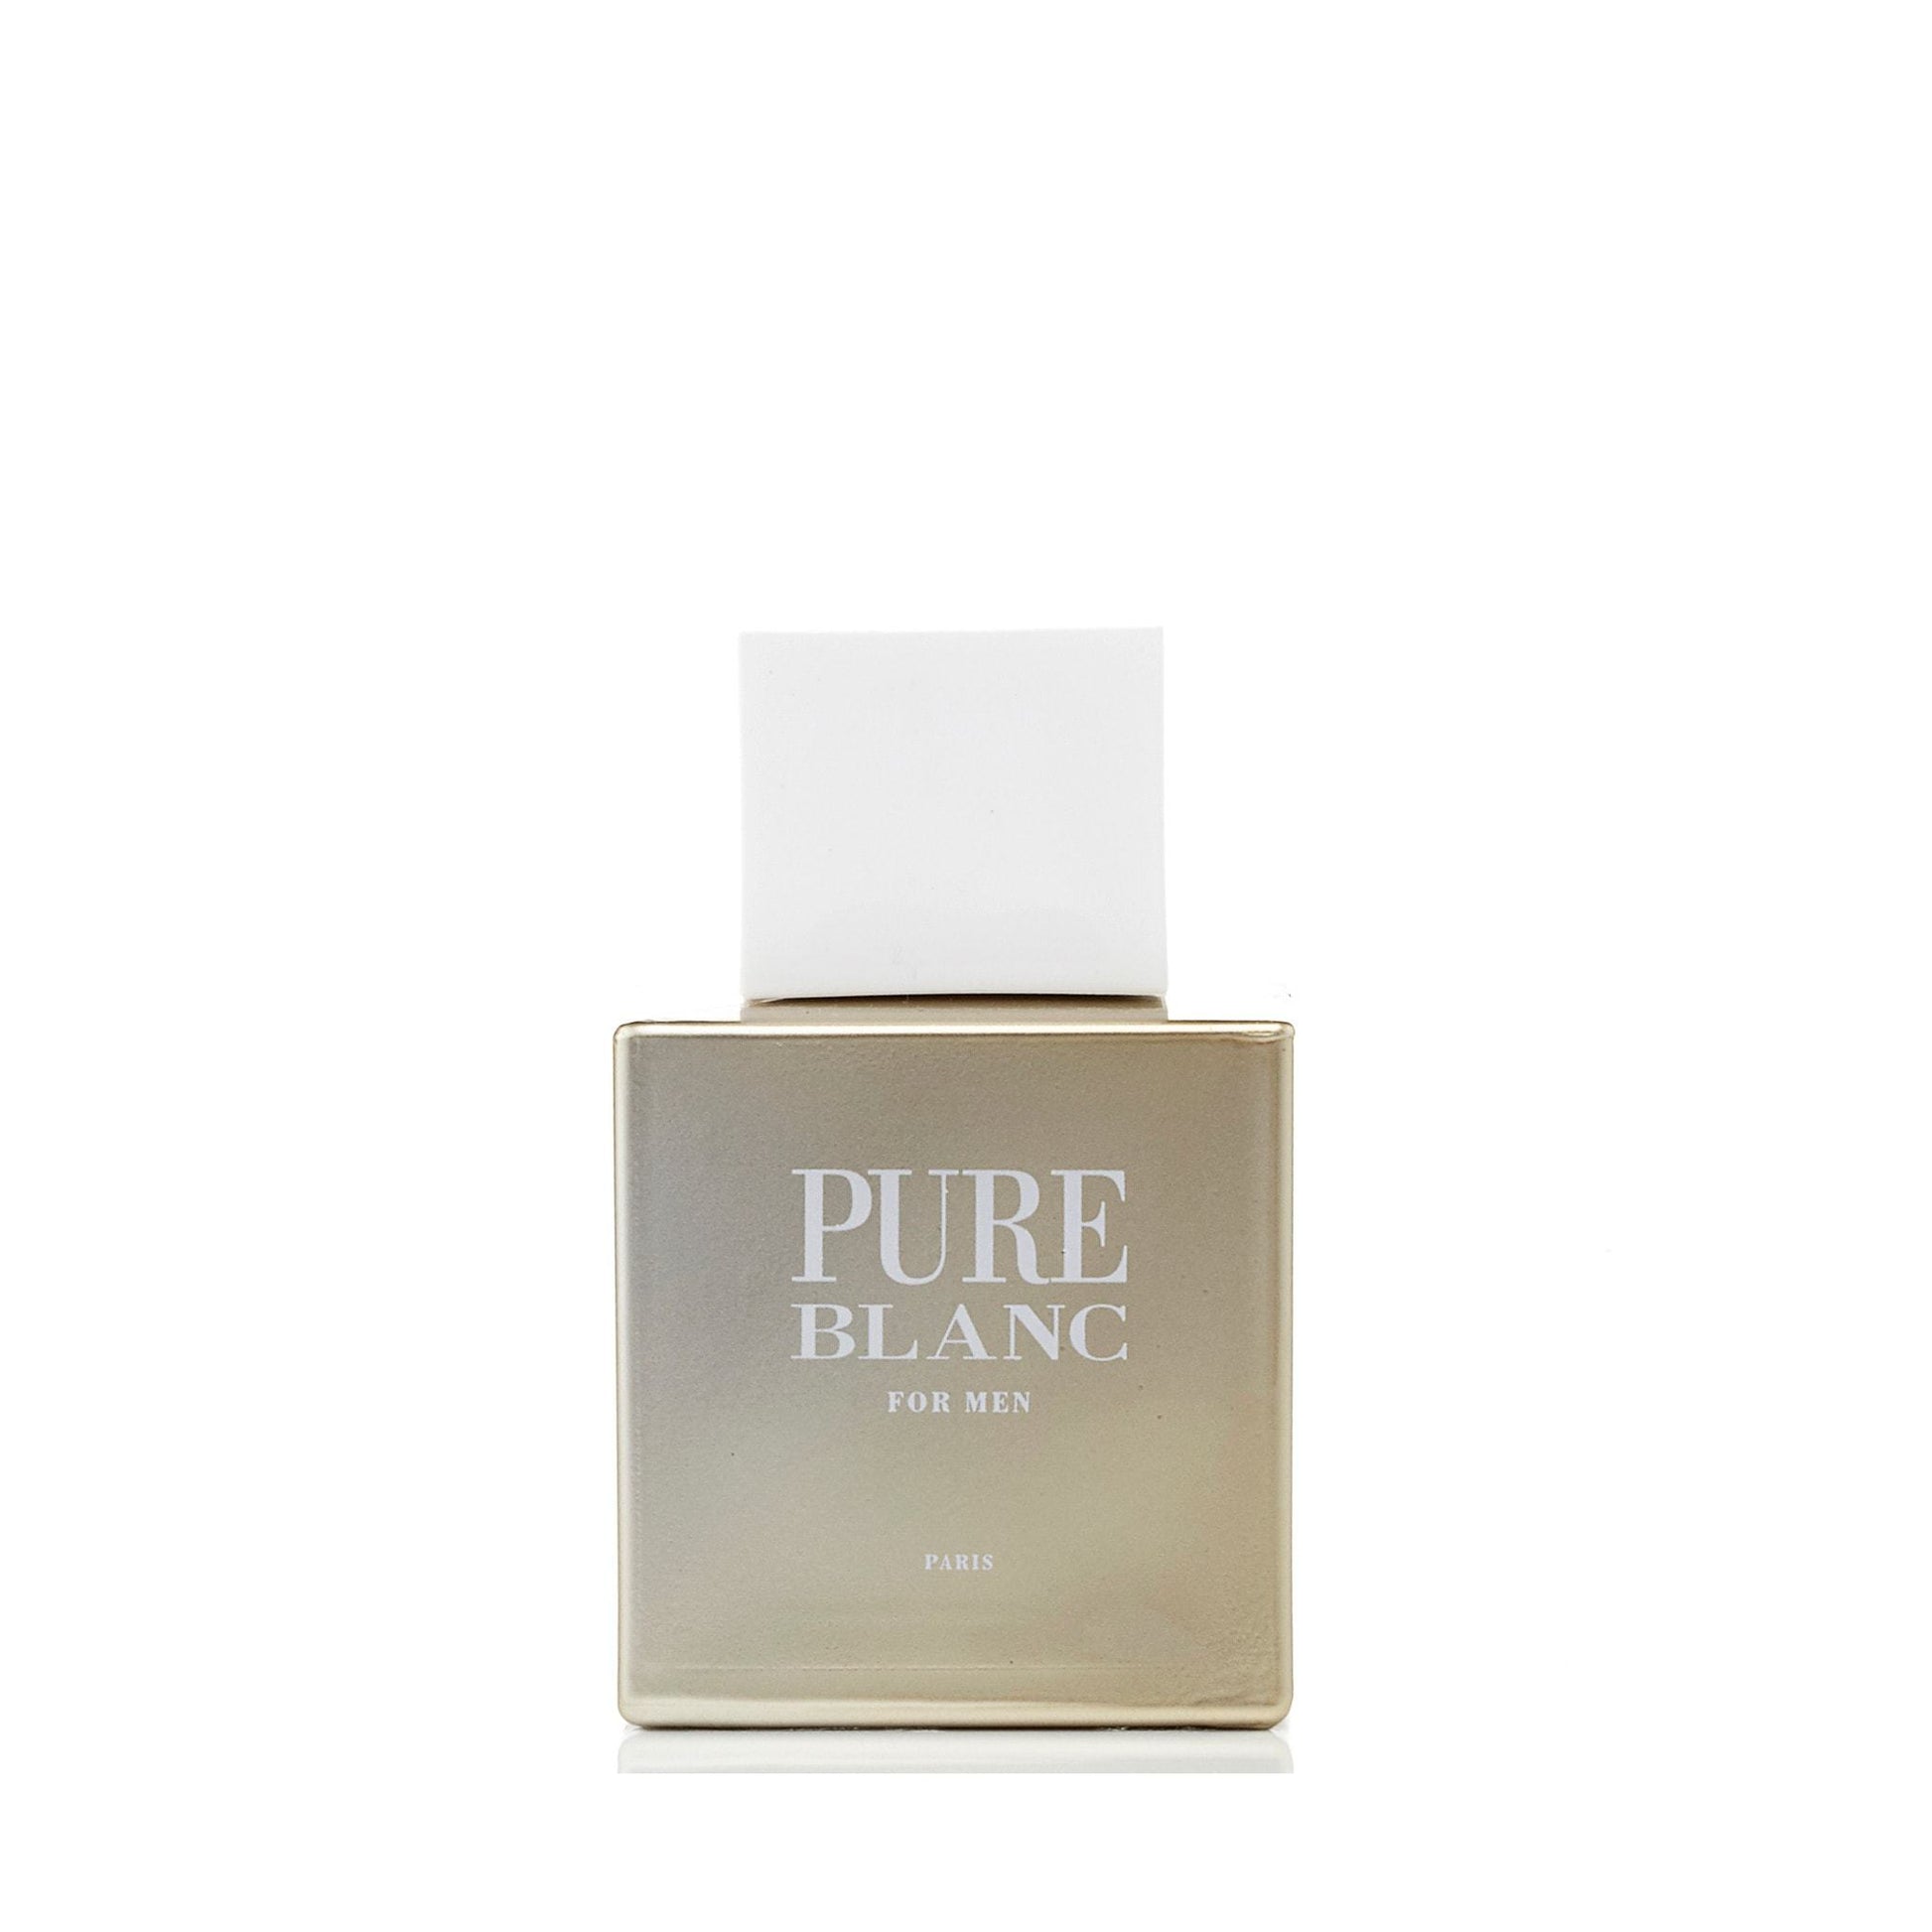 Pure Blanc Eau de Toilette Spray for Men, Product image 1